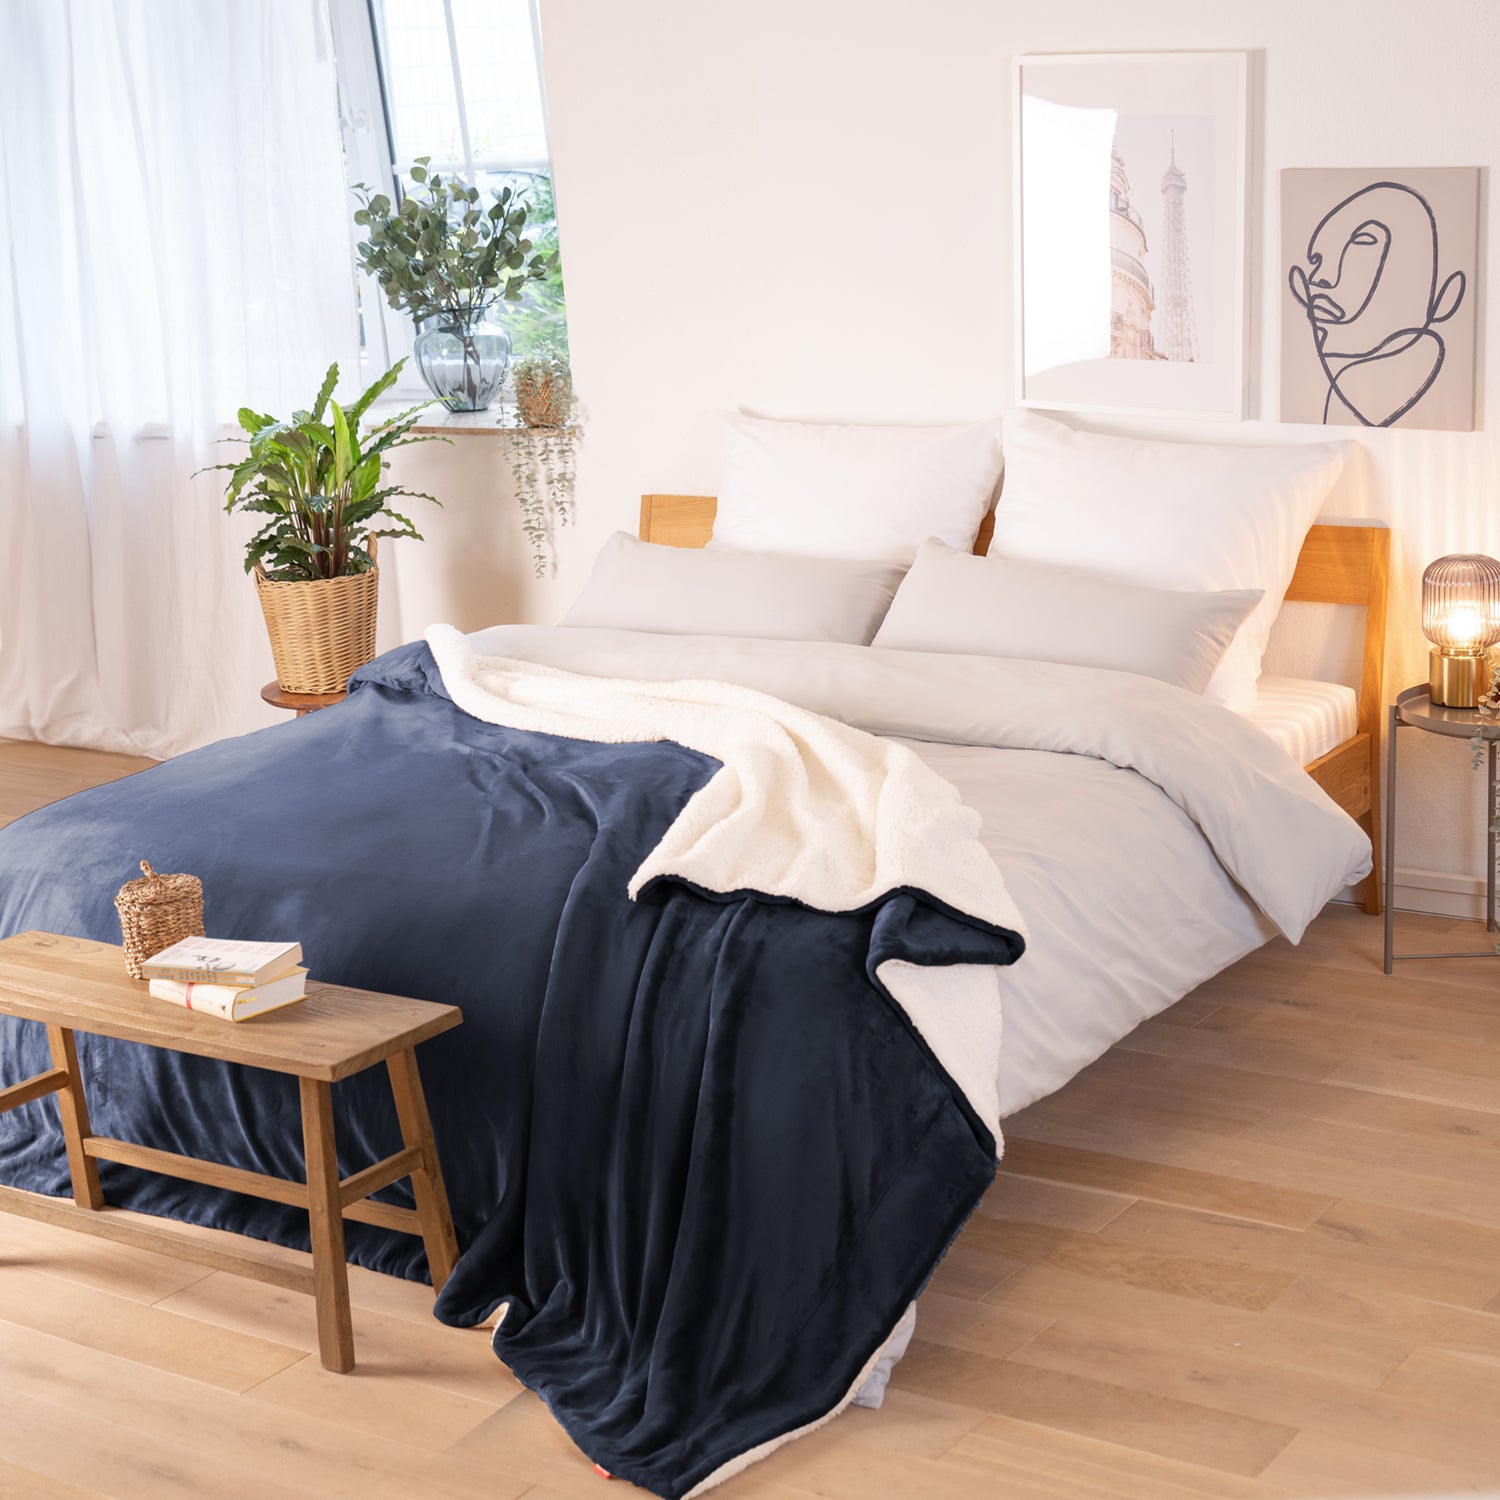 Dunkelblaue Decke mit weißer Fleece-Innenseite, ausgebreitet über ein Bett in einem Raum mit natürlicher Beleuchtung, Pflanzen und Bildern im Hintergrund.